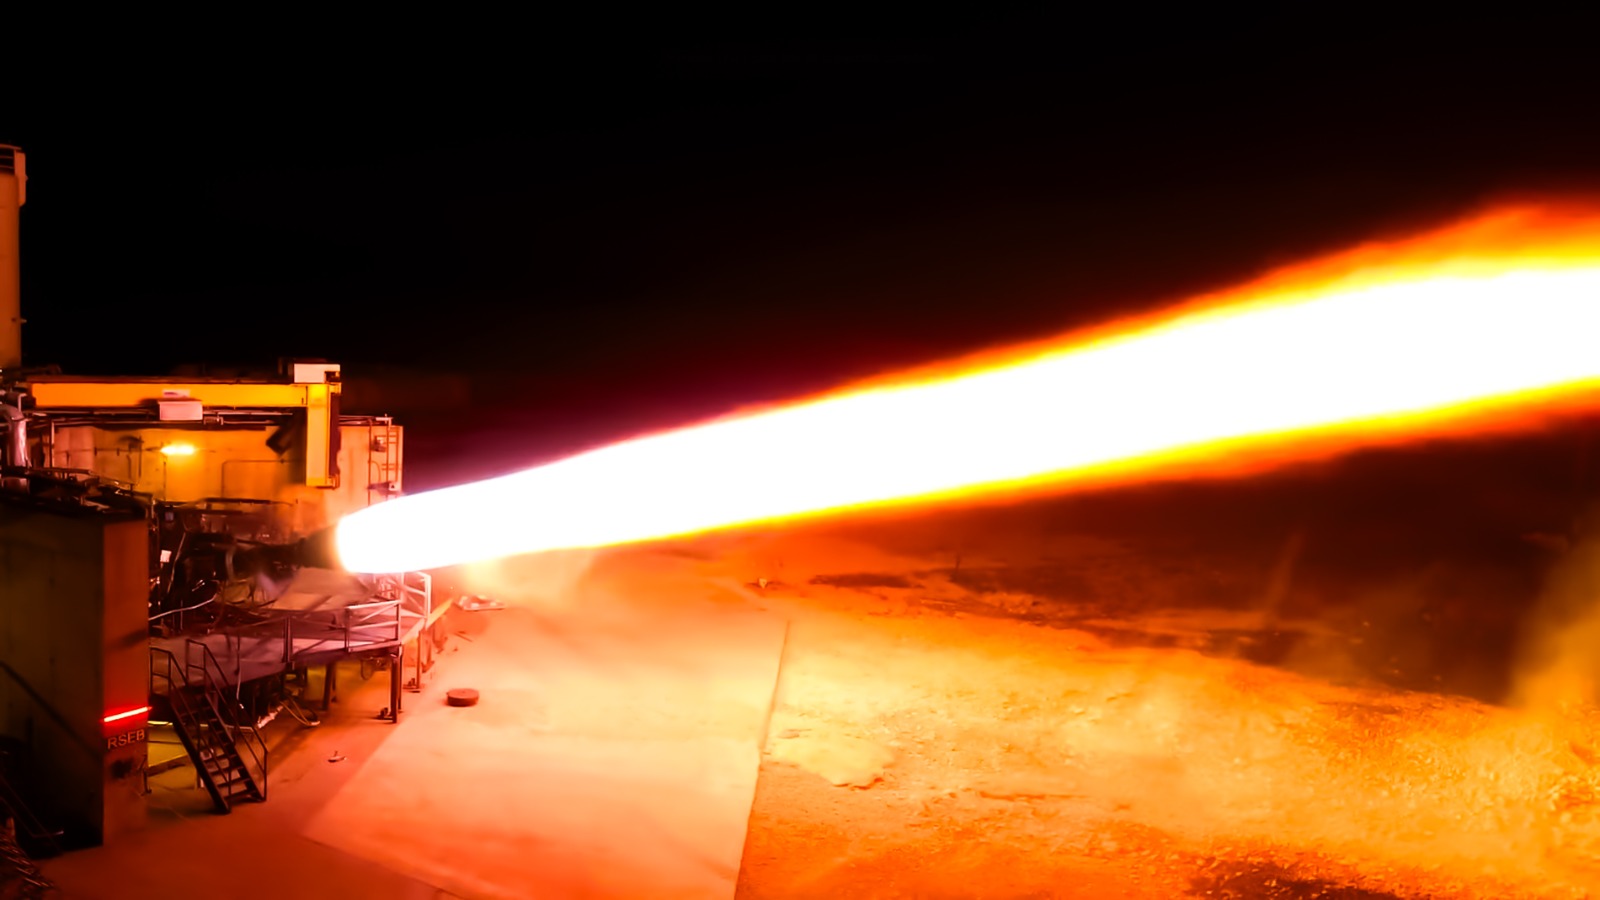 Espectacular prueba del motor Raptor con el que la NASA aterrizará en la Luna